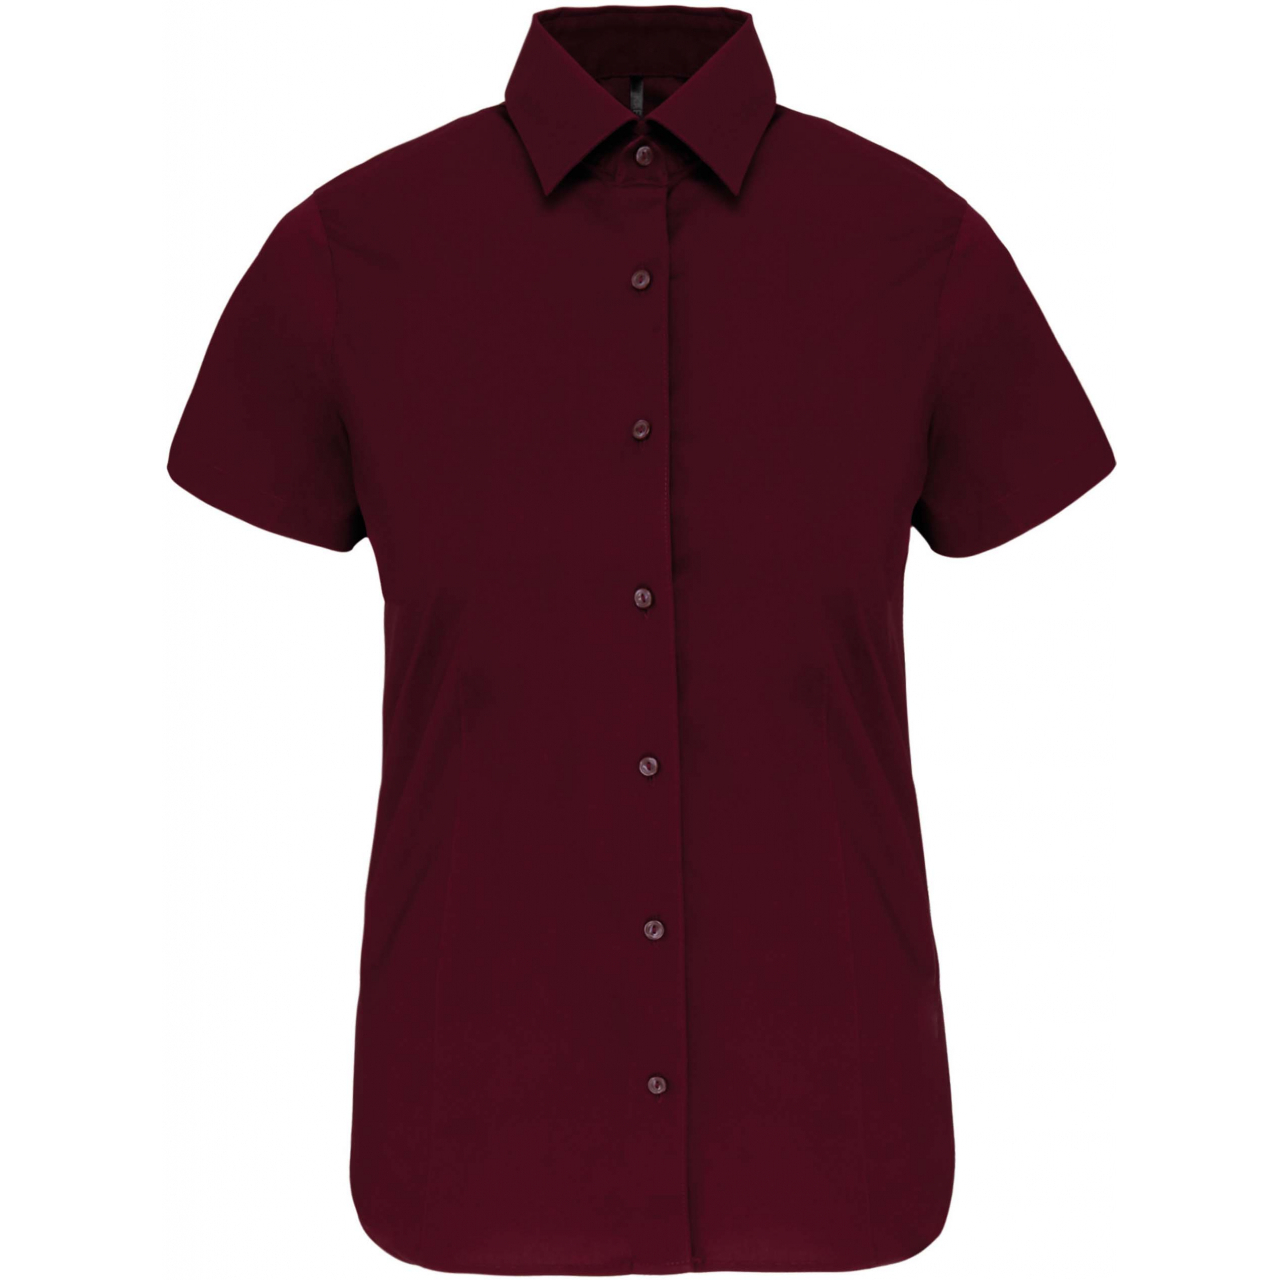 Košile dámská s krátkým rukávem Kariban strečová - vínová, XL